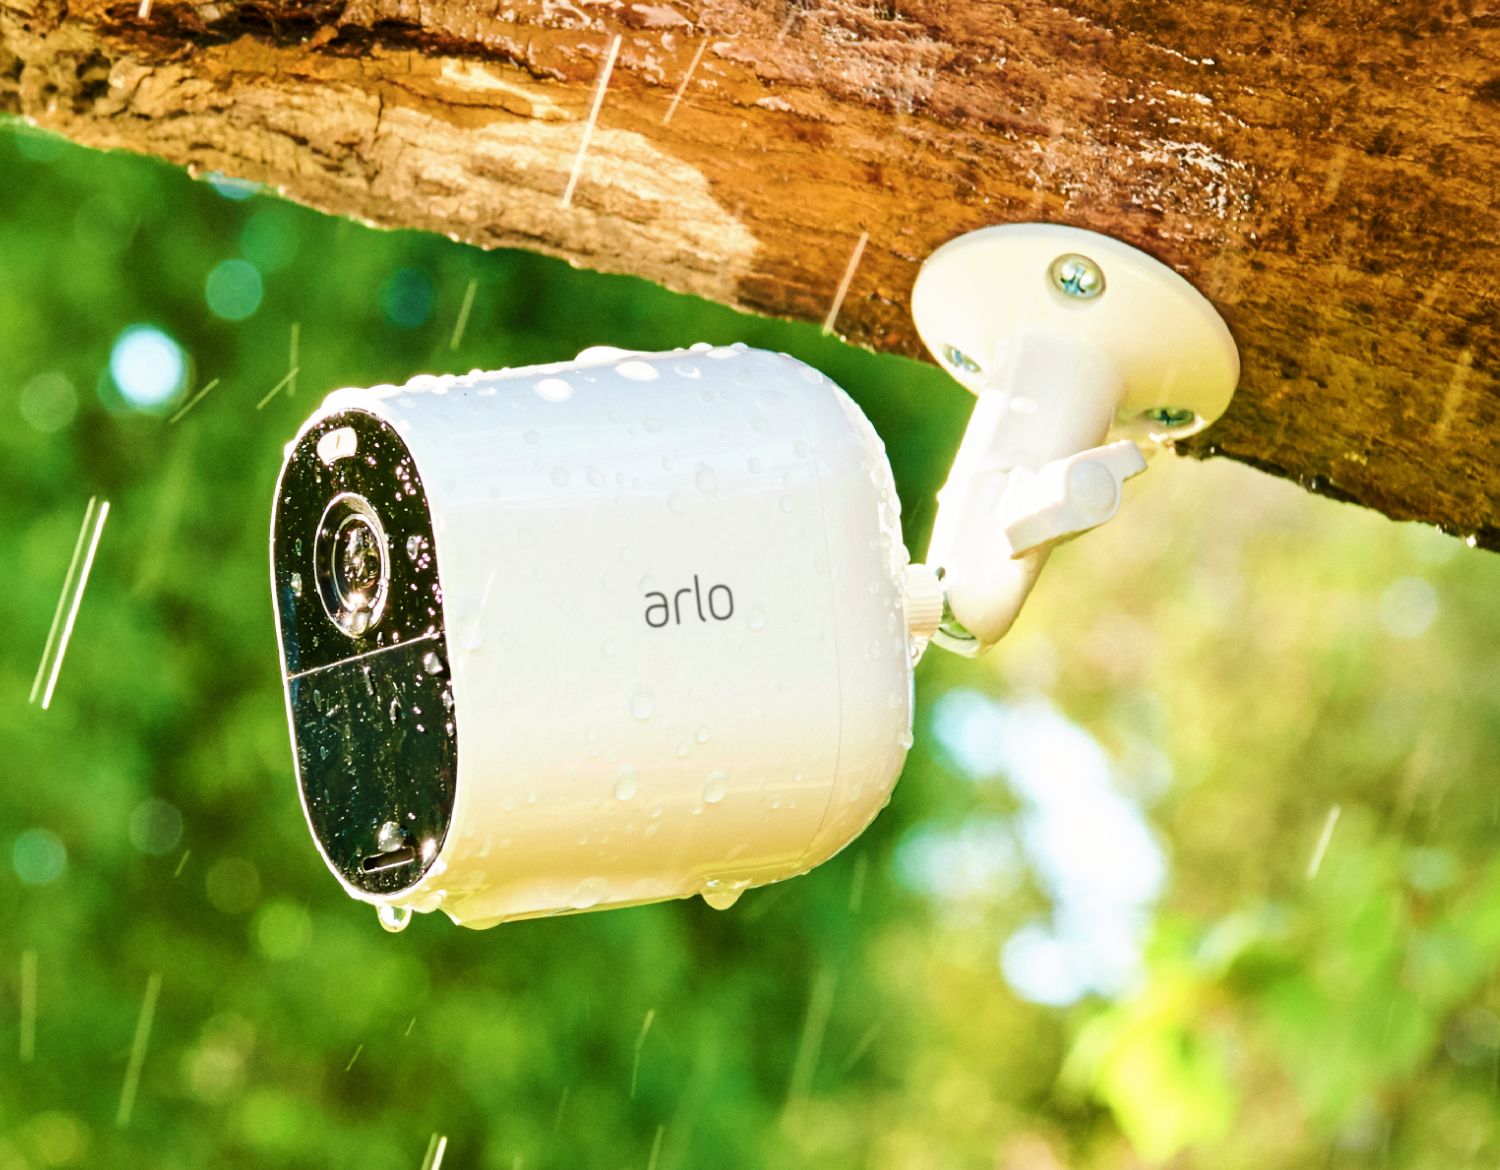 ARLO Camera attaché à un arbre sous la pluie, construit pour résister à la pluie, à la neige, au froid et au soleil